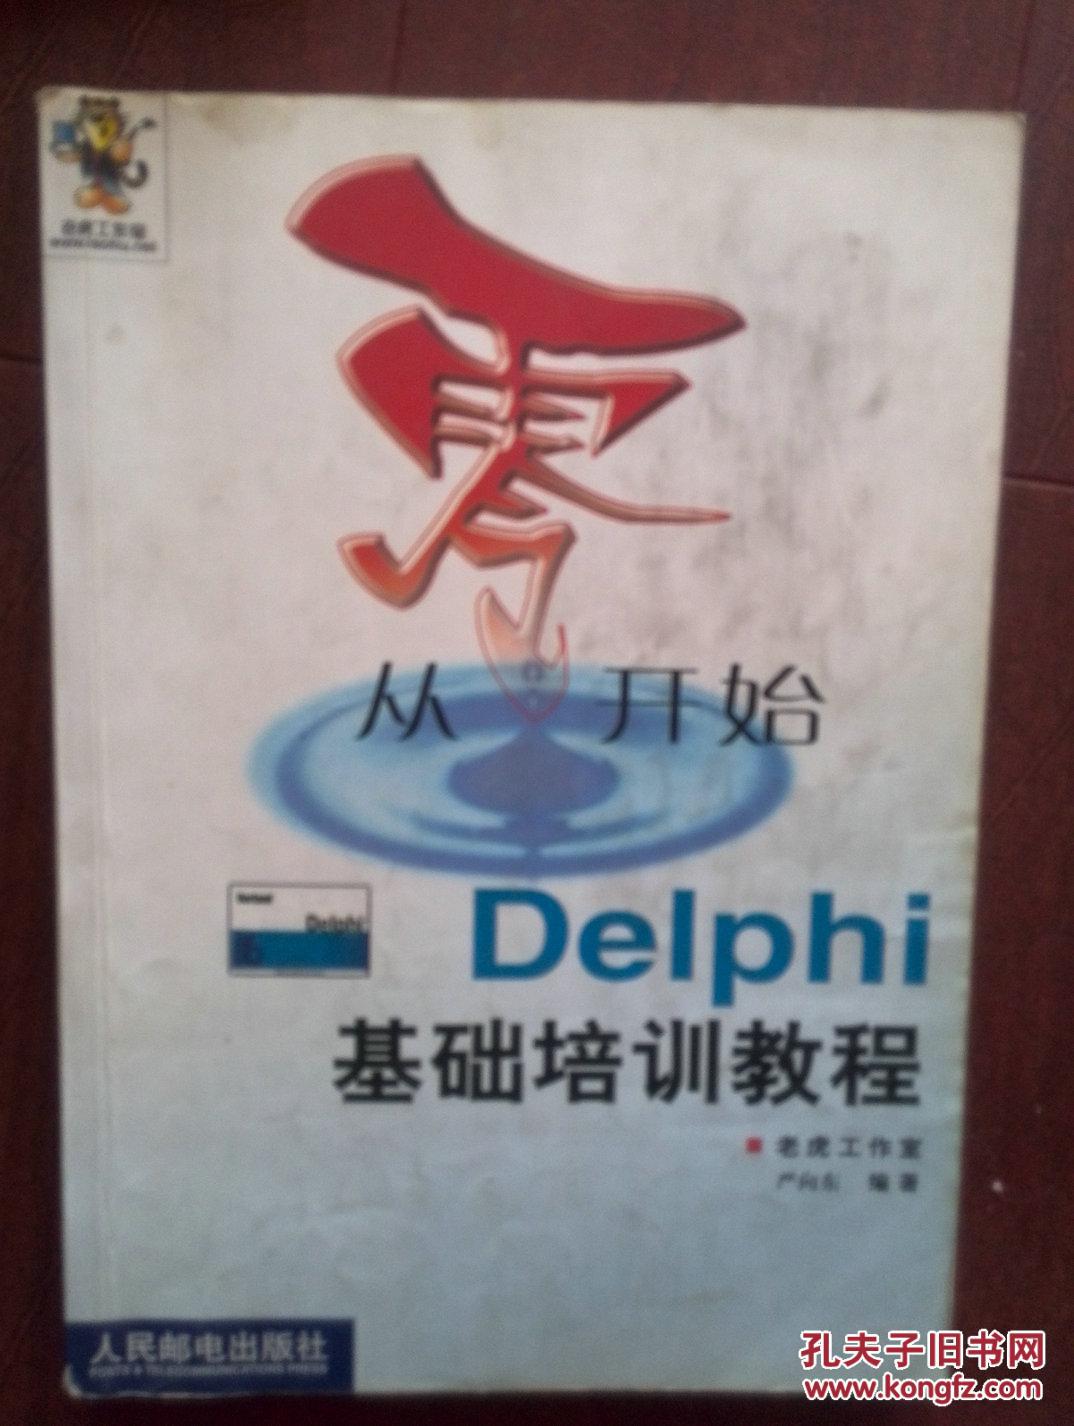 《从零开始Delphi基础培训教程》2002版,345页